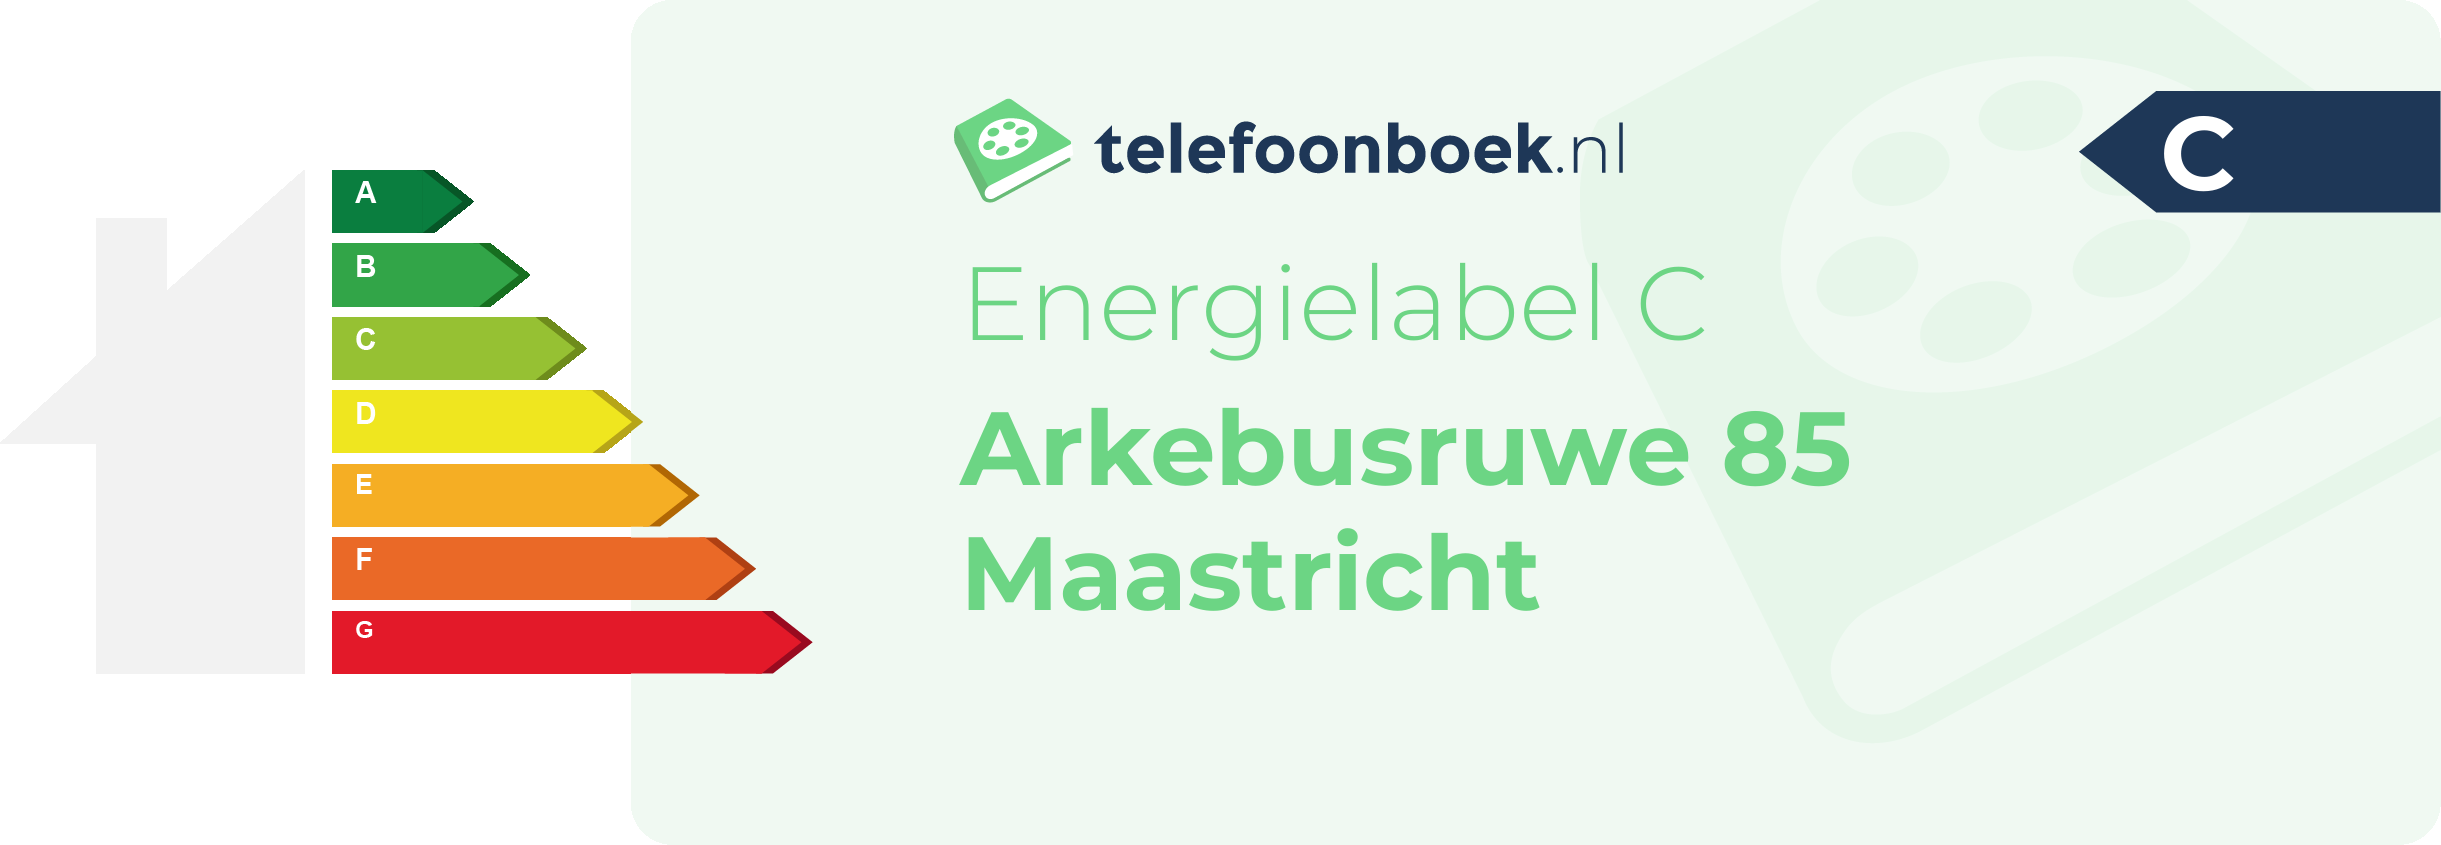 Energielabel Arkebusruwe 85 Maastricht